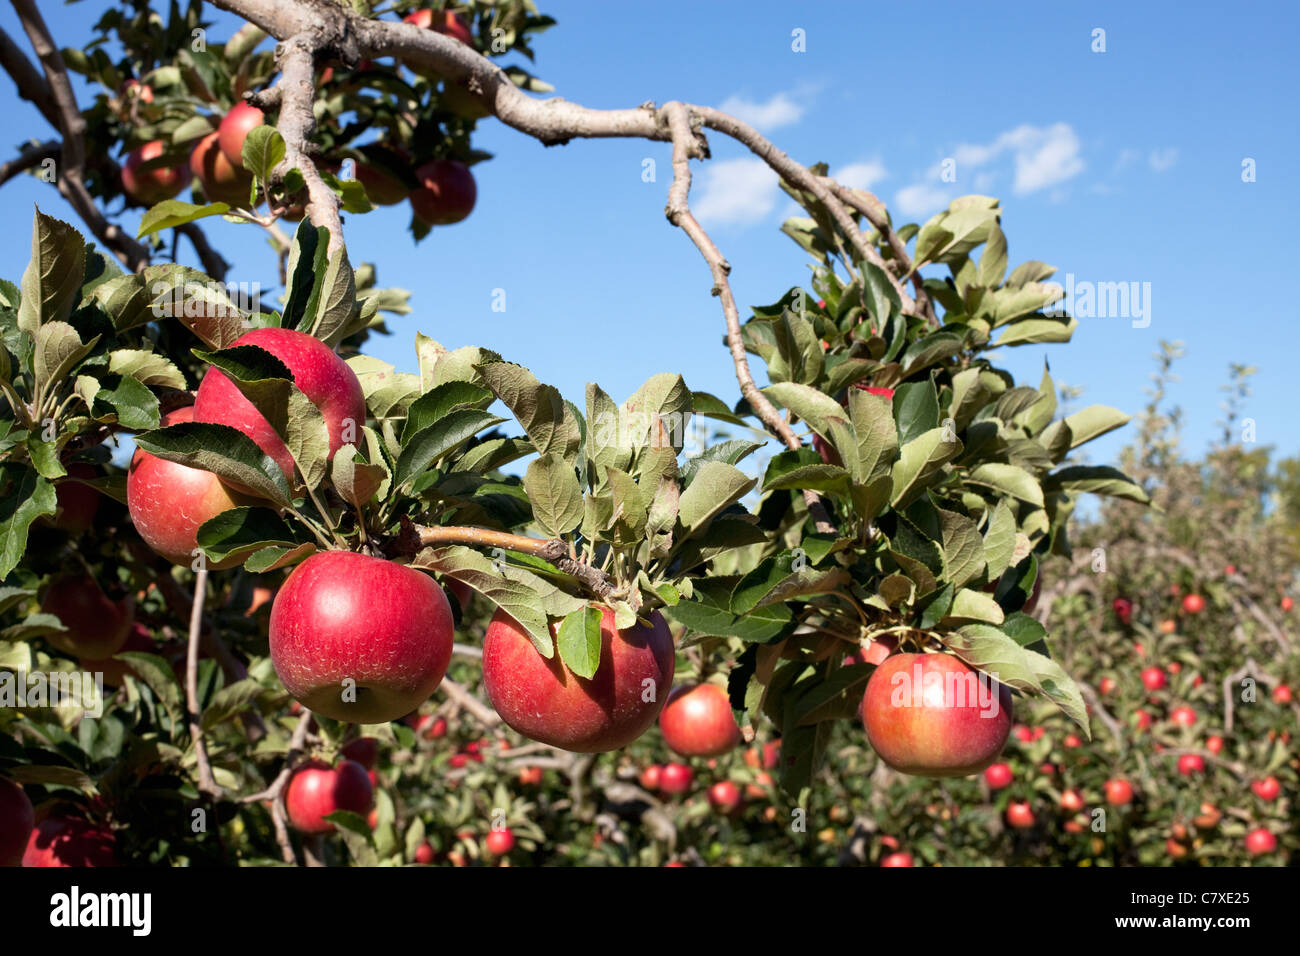 Canada,Ontario,Vineland, fruits rouges pommes sur une branche de pommier Banque D'Images